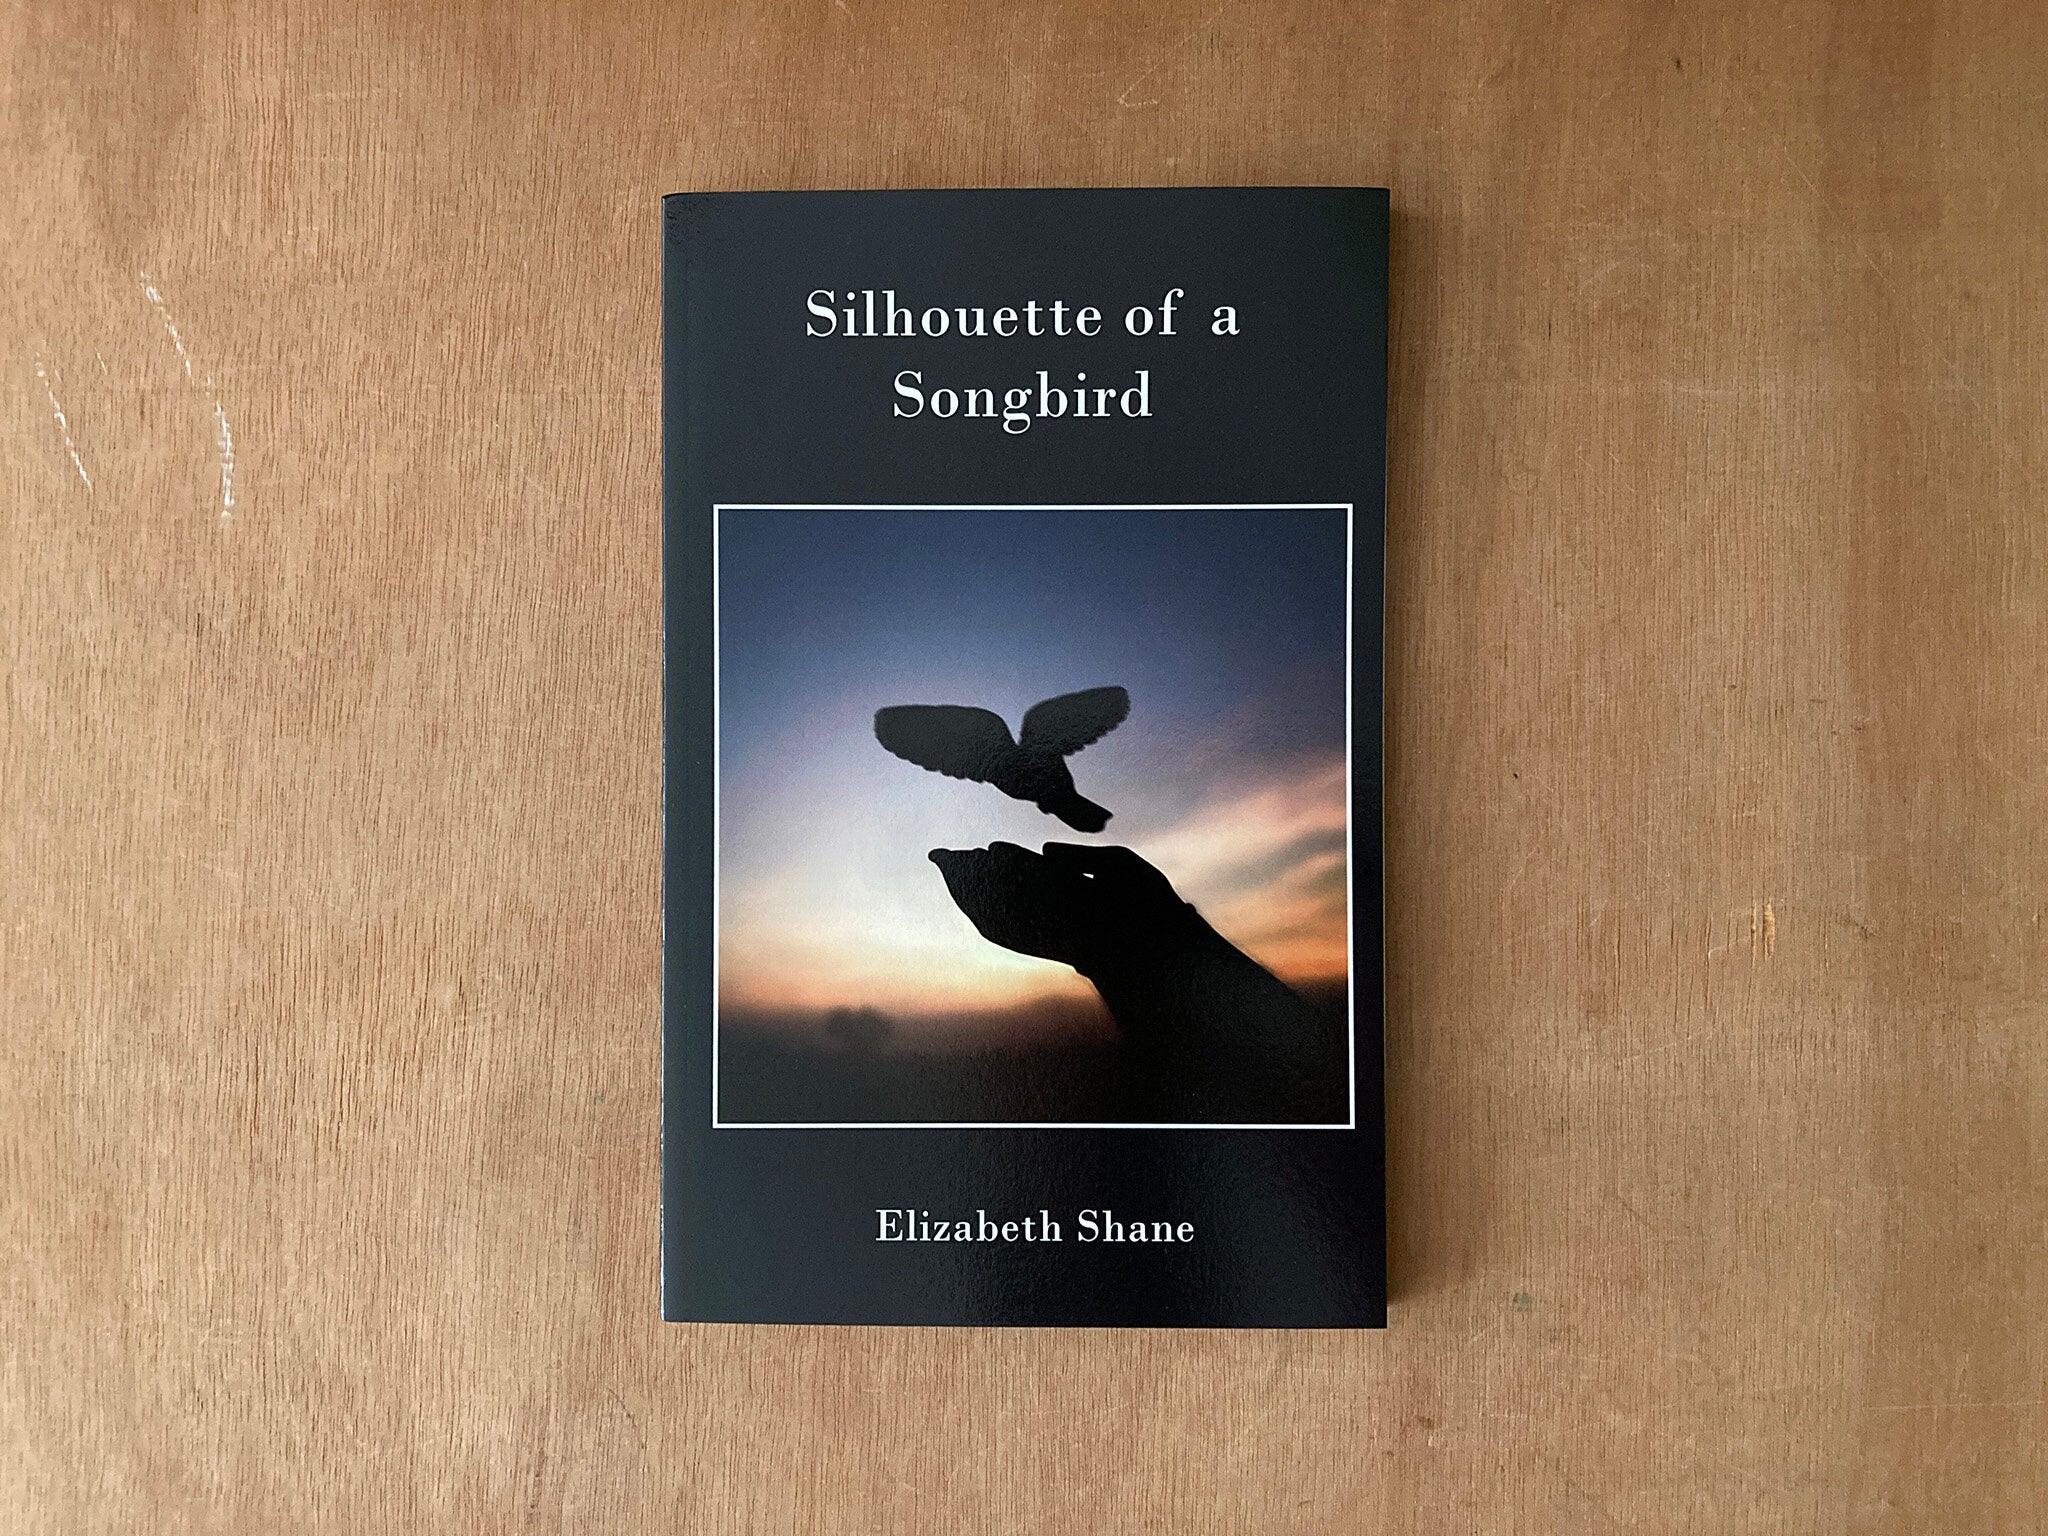 SILHOUETTE OF A SONGBIRD by Elizabeth Shane